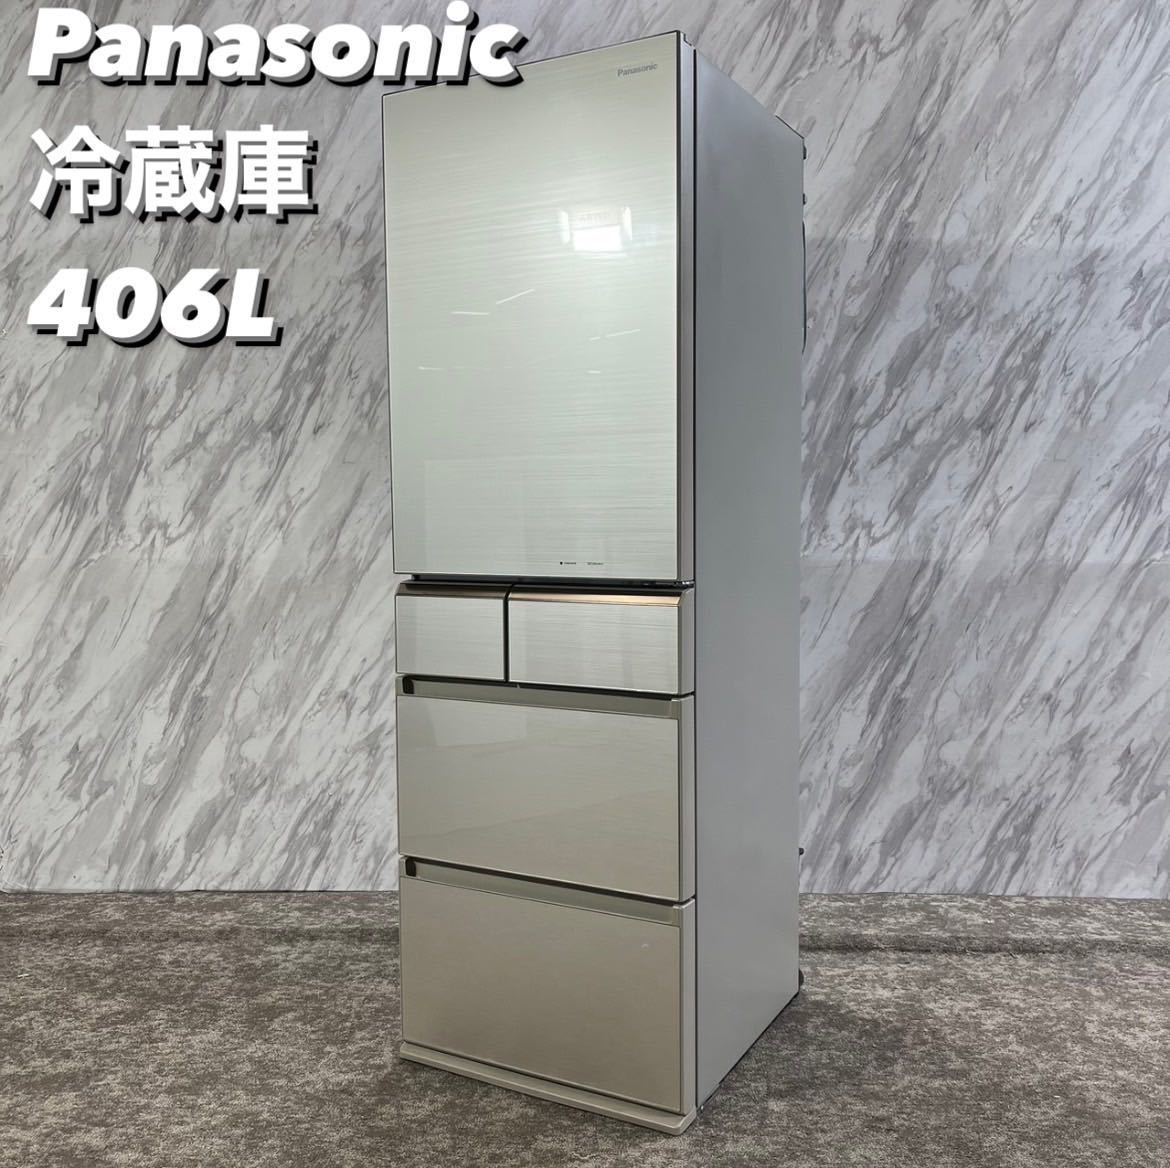 Panasonic 冷蔵庫 NR-E413PV 2018年製 406L 家電 Q062